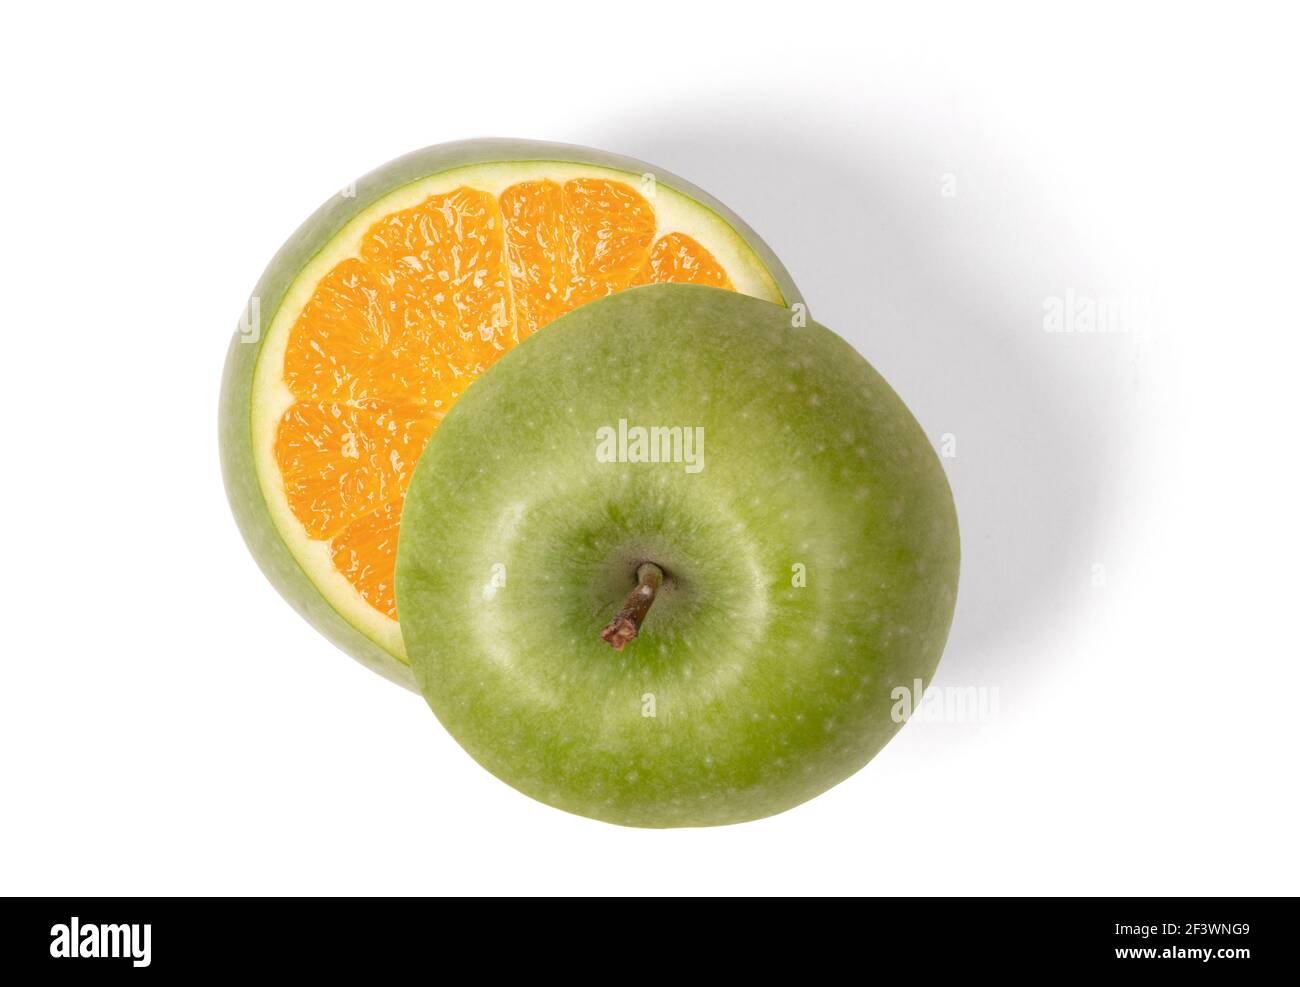 Pomme verte avec orange à l'intérieur, isolée sur blanc Banque D'Images